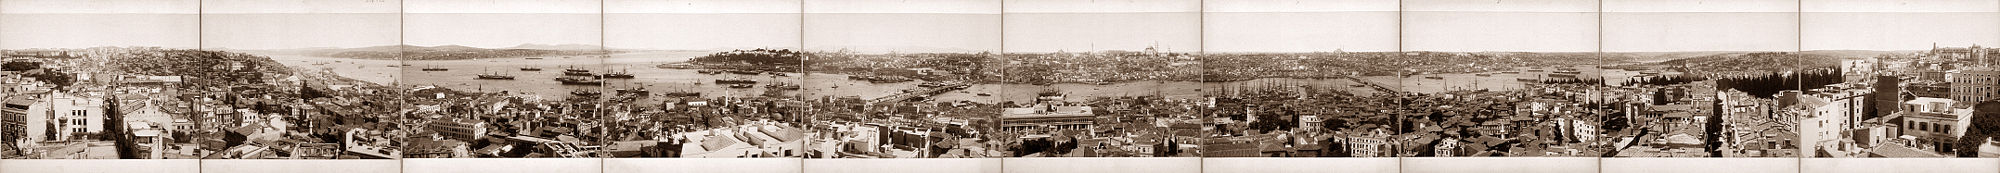 Panorama-Ansicht Istanbuls vom Galata-Turm aus, um 1890. Links im Nordosten der Bosporus Richtung Schwarzes Meer, in der Mitte das goldene Horn und die Altstadt, rechts der Westen, im Vordergrund das Hafenviertel.